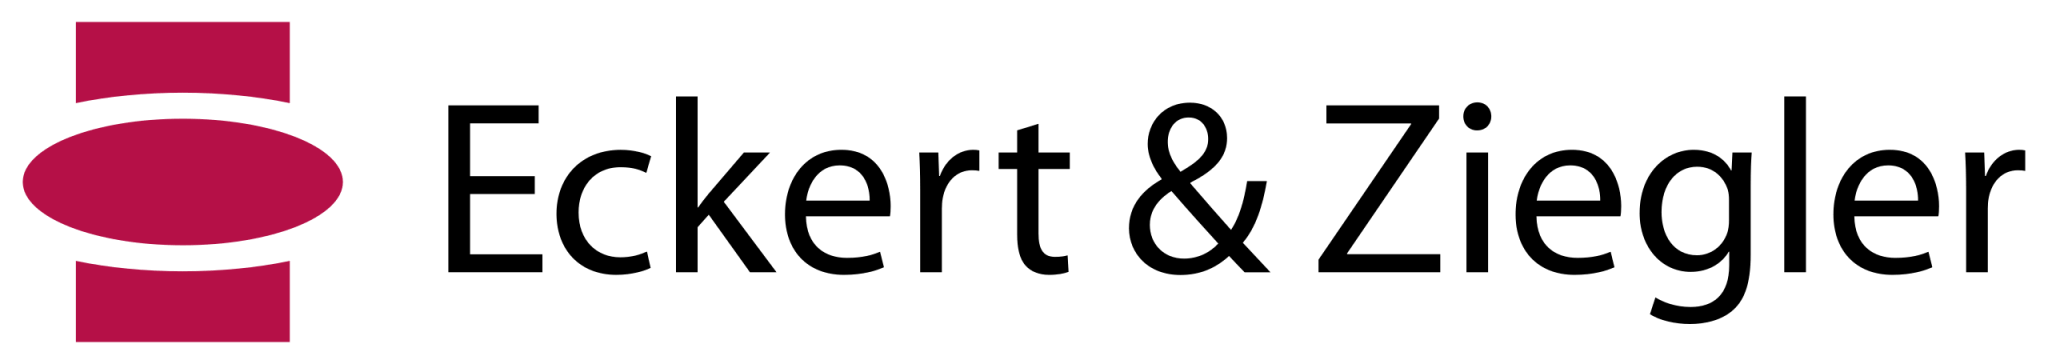 Darstellung des Logos von Eckert & Ziegler Radiopharma GmbH